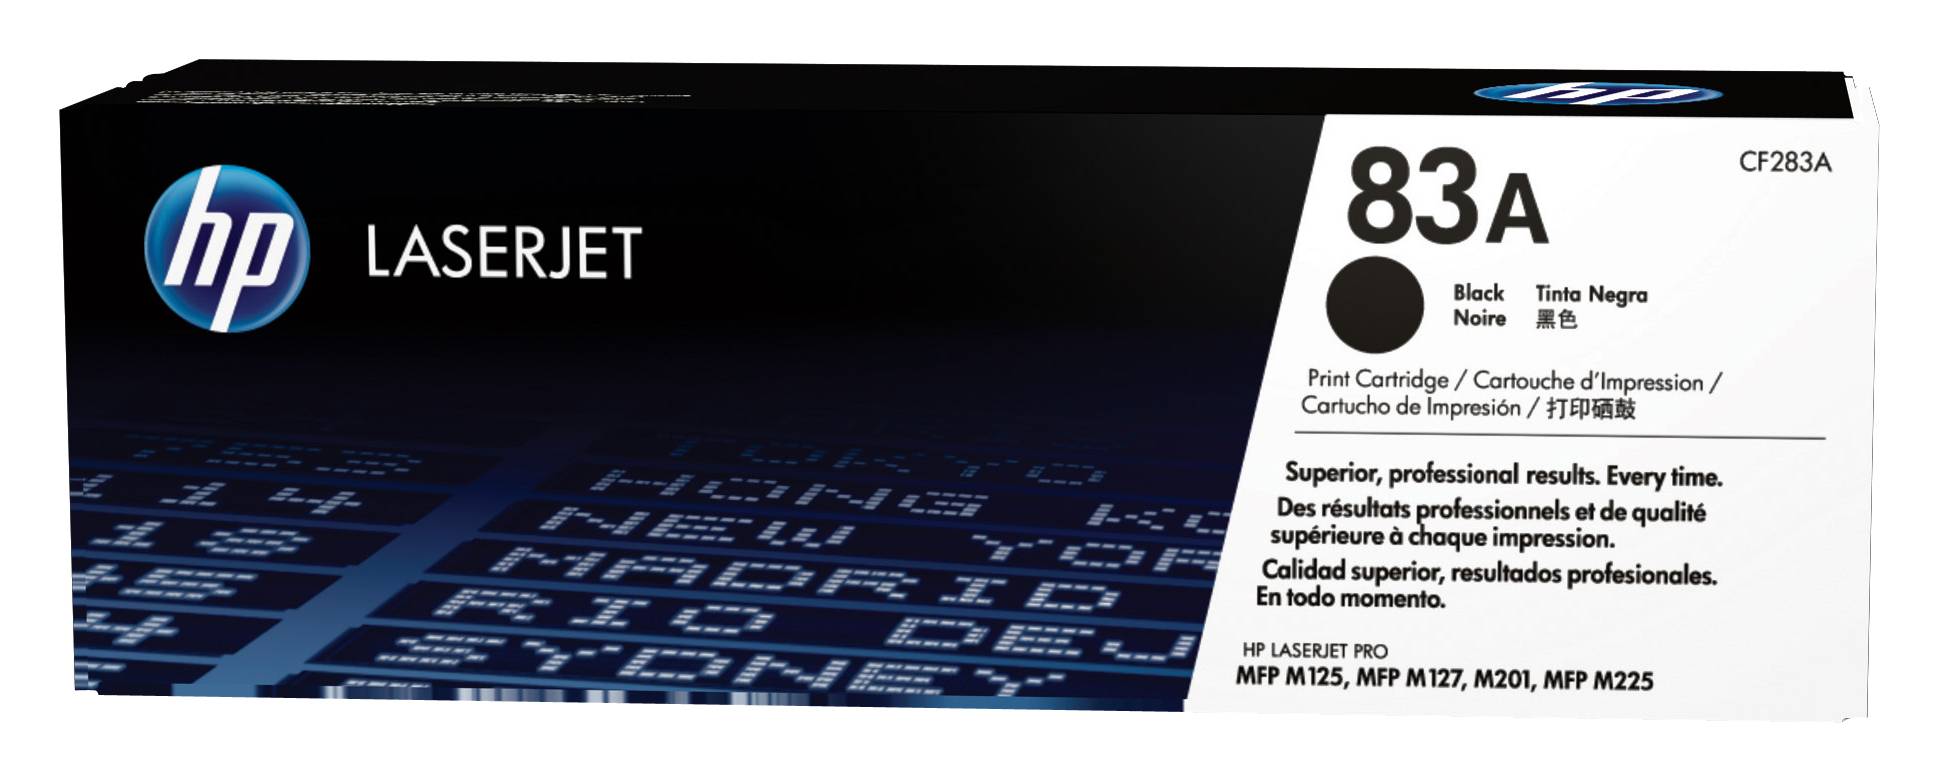 Rca Informatique - image du produit : TONER CARTRIDGE HP 83A BLACK LASERJET